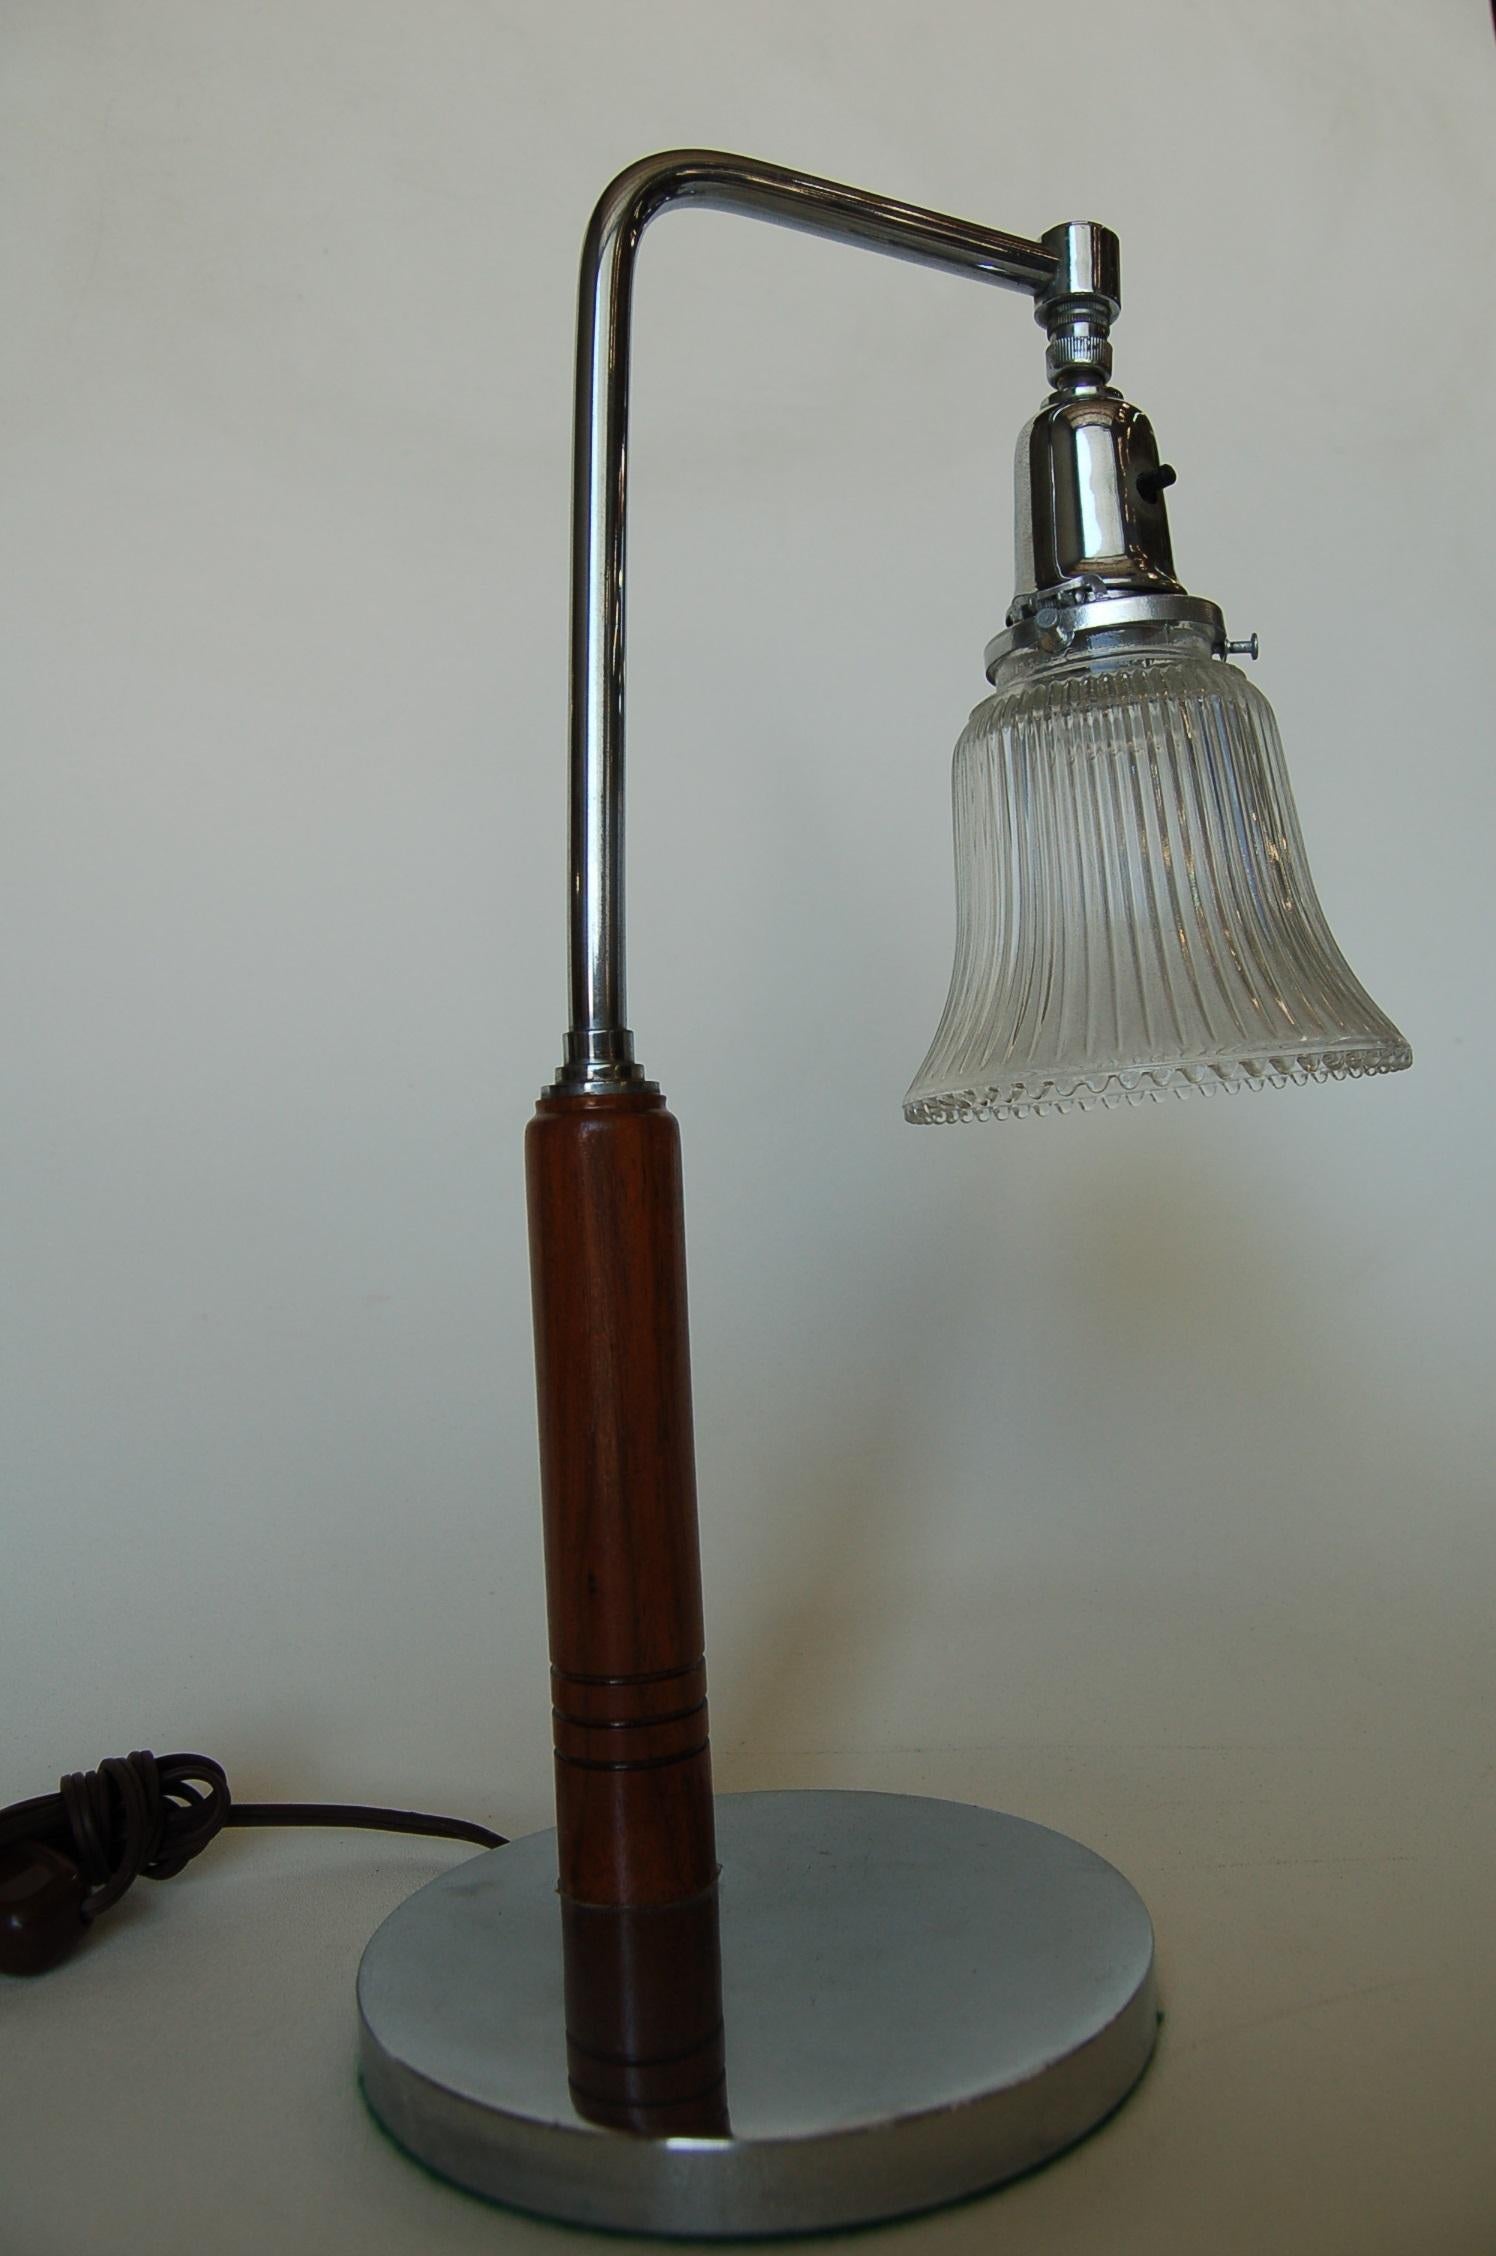 Lampe de bureau Art Déco avec abat-jour en verre en forme de cloche et garniture en bois et chrome.

Mesures : 9